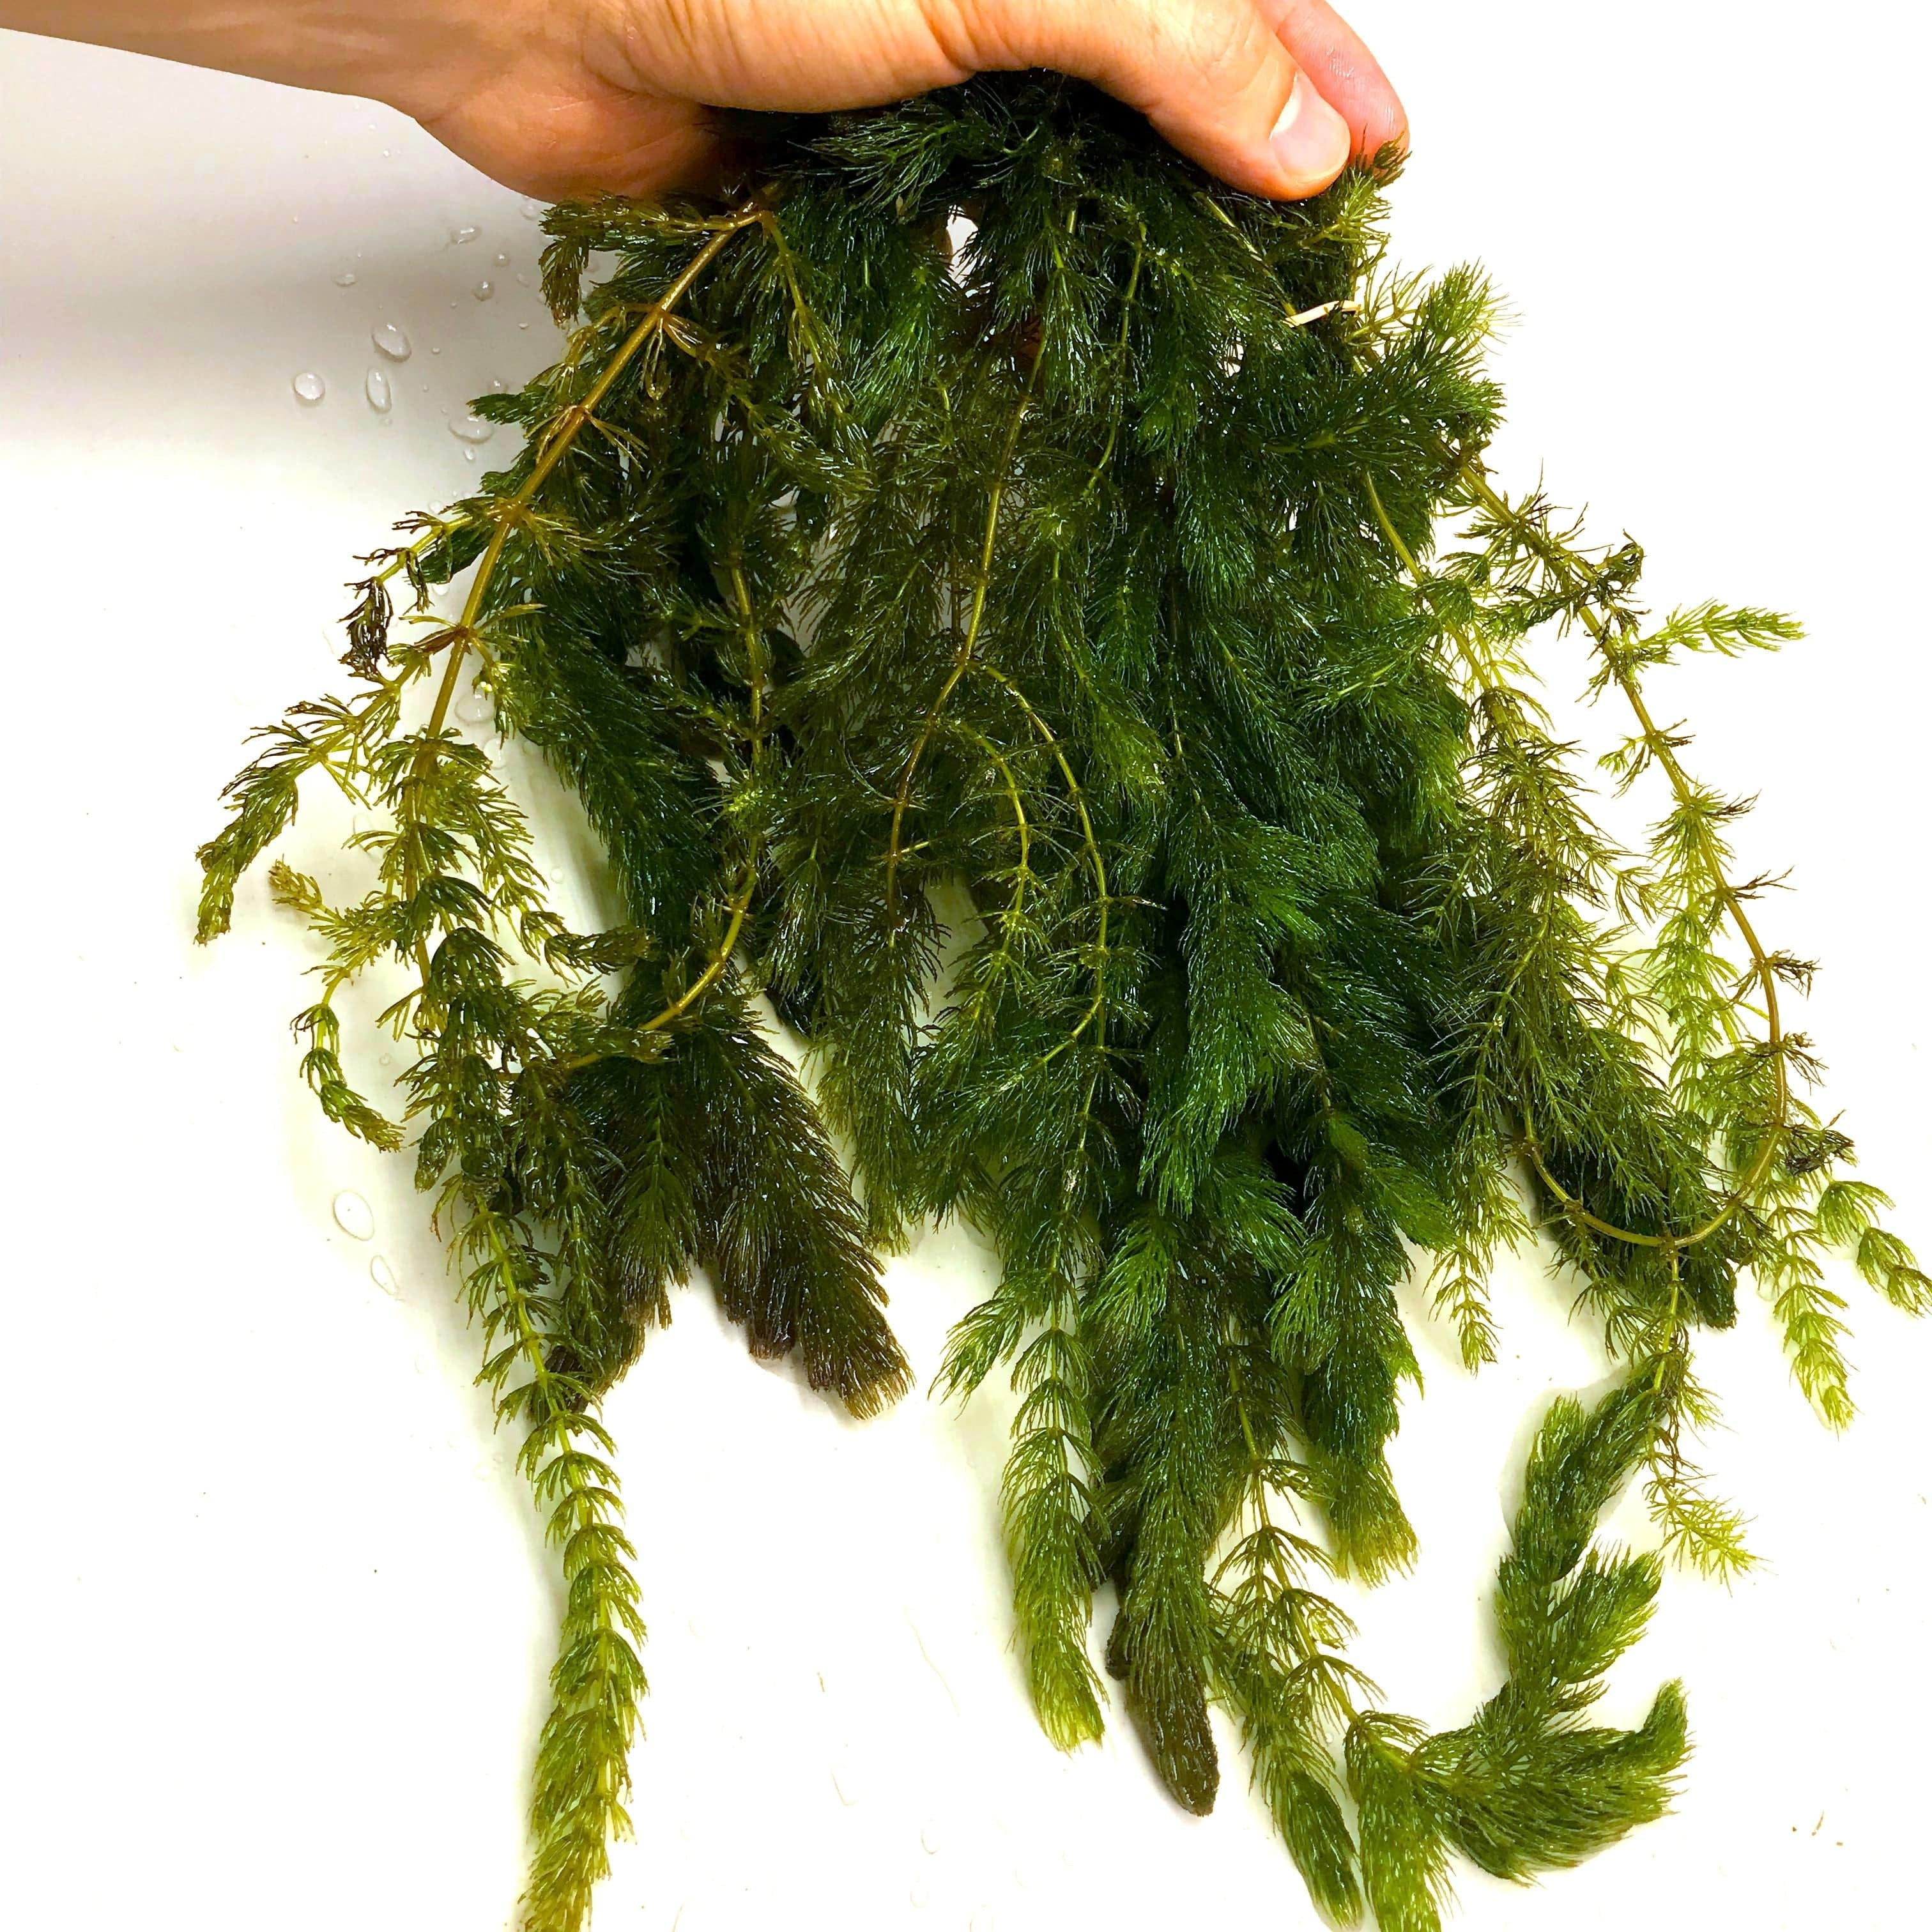 1 Hornwort Bunch - Ceratophyllum Demersum - Beginner Tropical Live Aquarium Plant